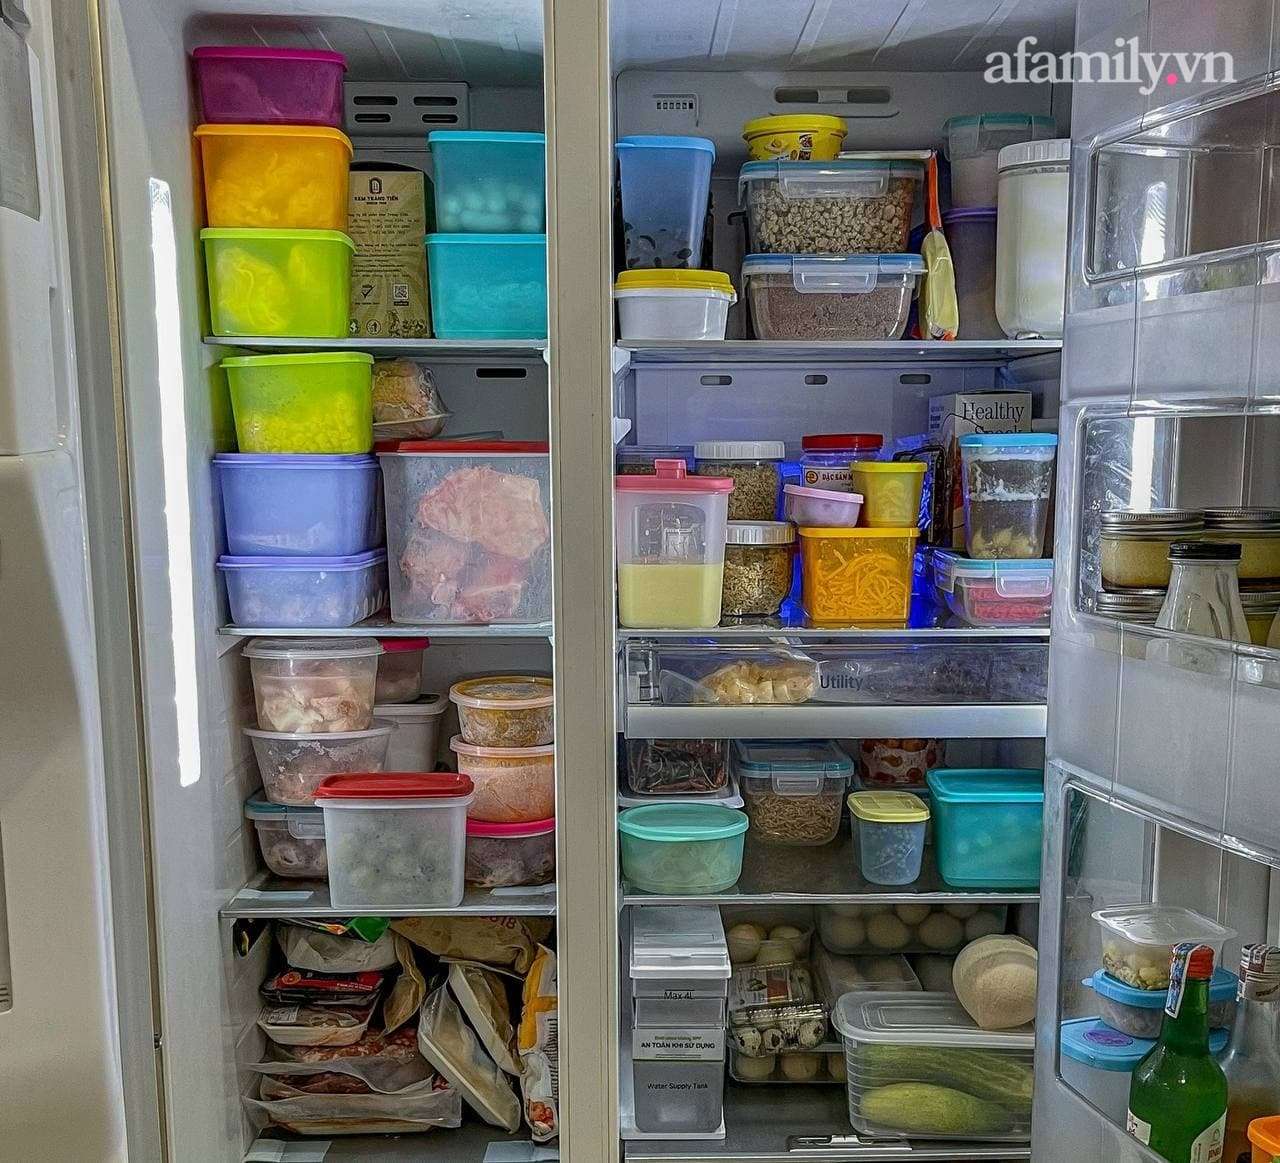 Mẹ đảm Hà Nội khoe chiếc tủ lạnh nhà LG toàn chức năng thông minh "đáng ghen tị", ngặt mỗi khoản giá hơi chát tới 48 triệu đồng - Ảnh 7.